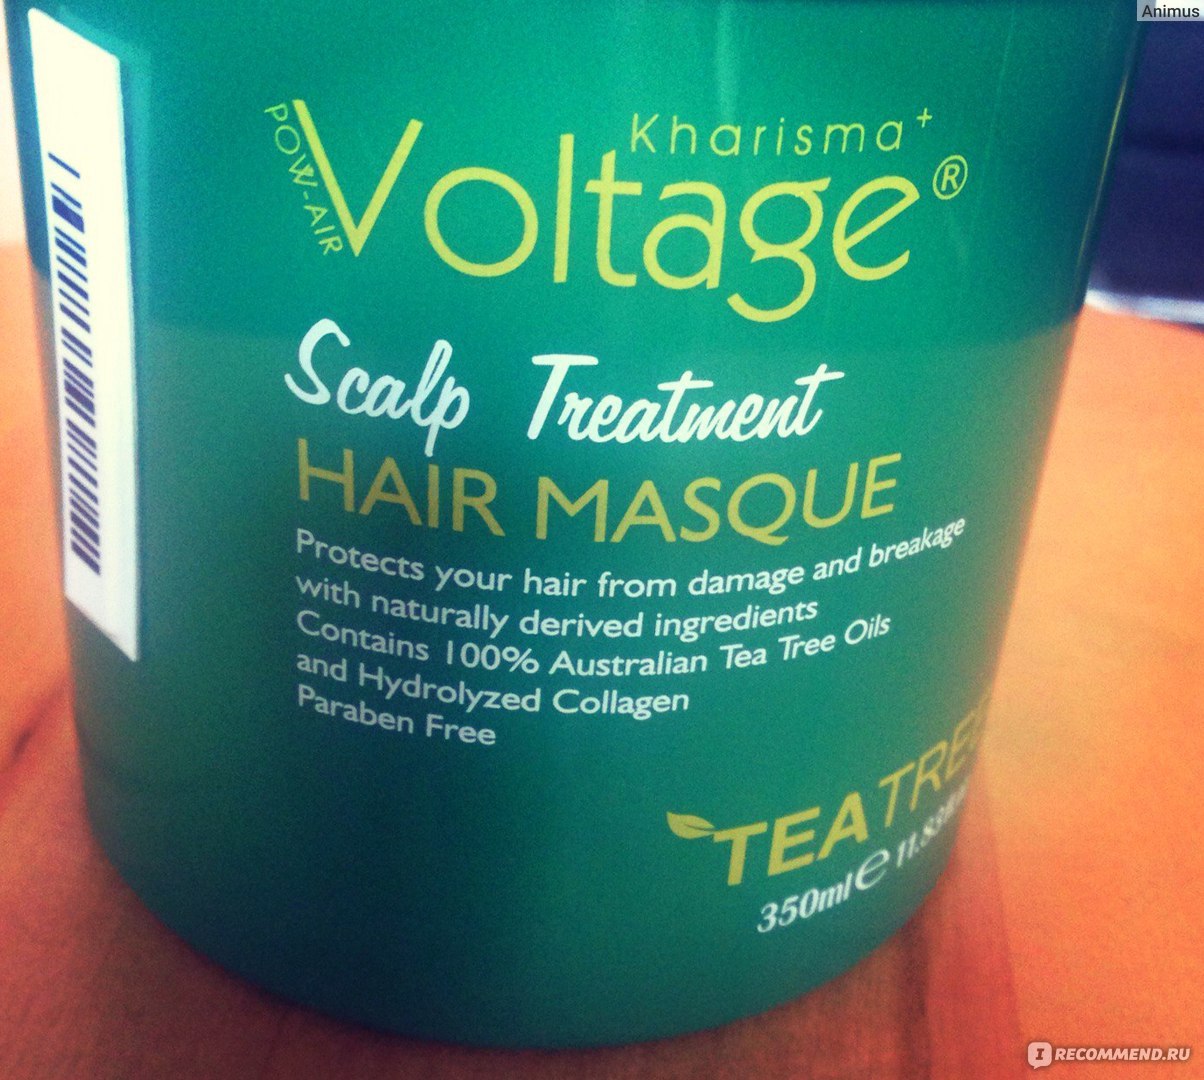 Маска для волос kharisma voltage. Kharisma Voltage маска. Воск для укладки волос Kharisma Voltage.